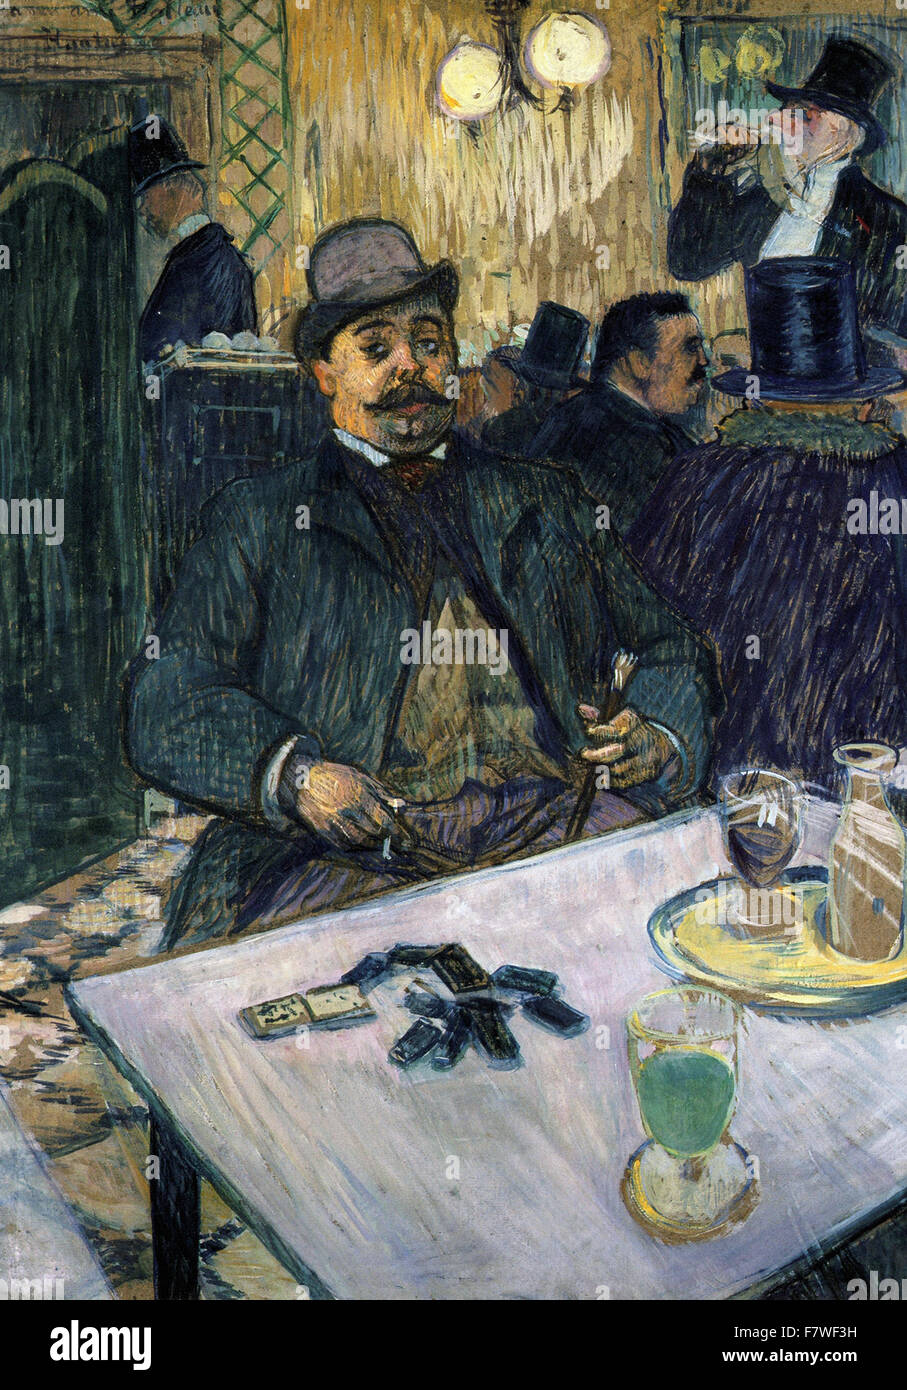 Henri de Toulouse-Lautrec - Monsieur Boileau at the Café Stock Photo